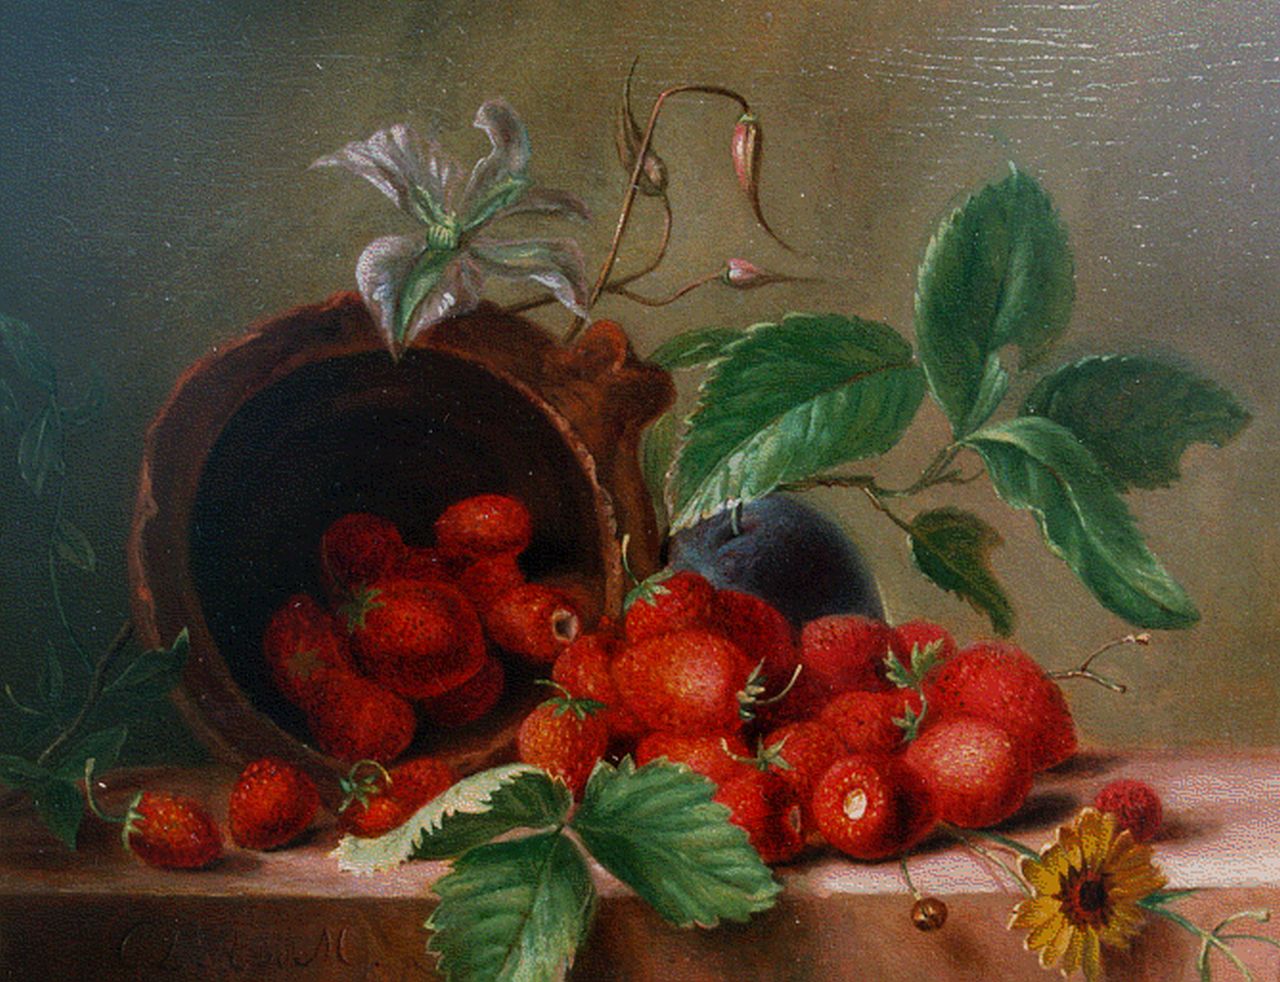 Onbekend   | Onbekend, Stilleven met aardbeien, oil on panel 18.0 x 22.5 cm, gedateerd 1839